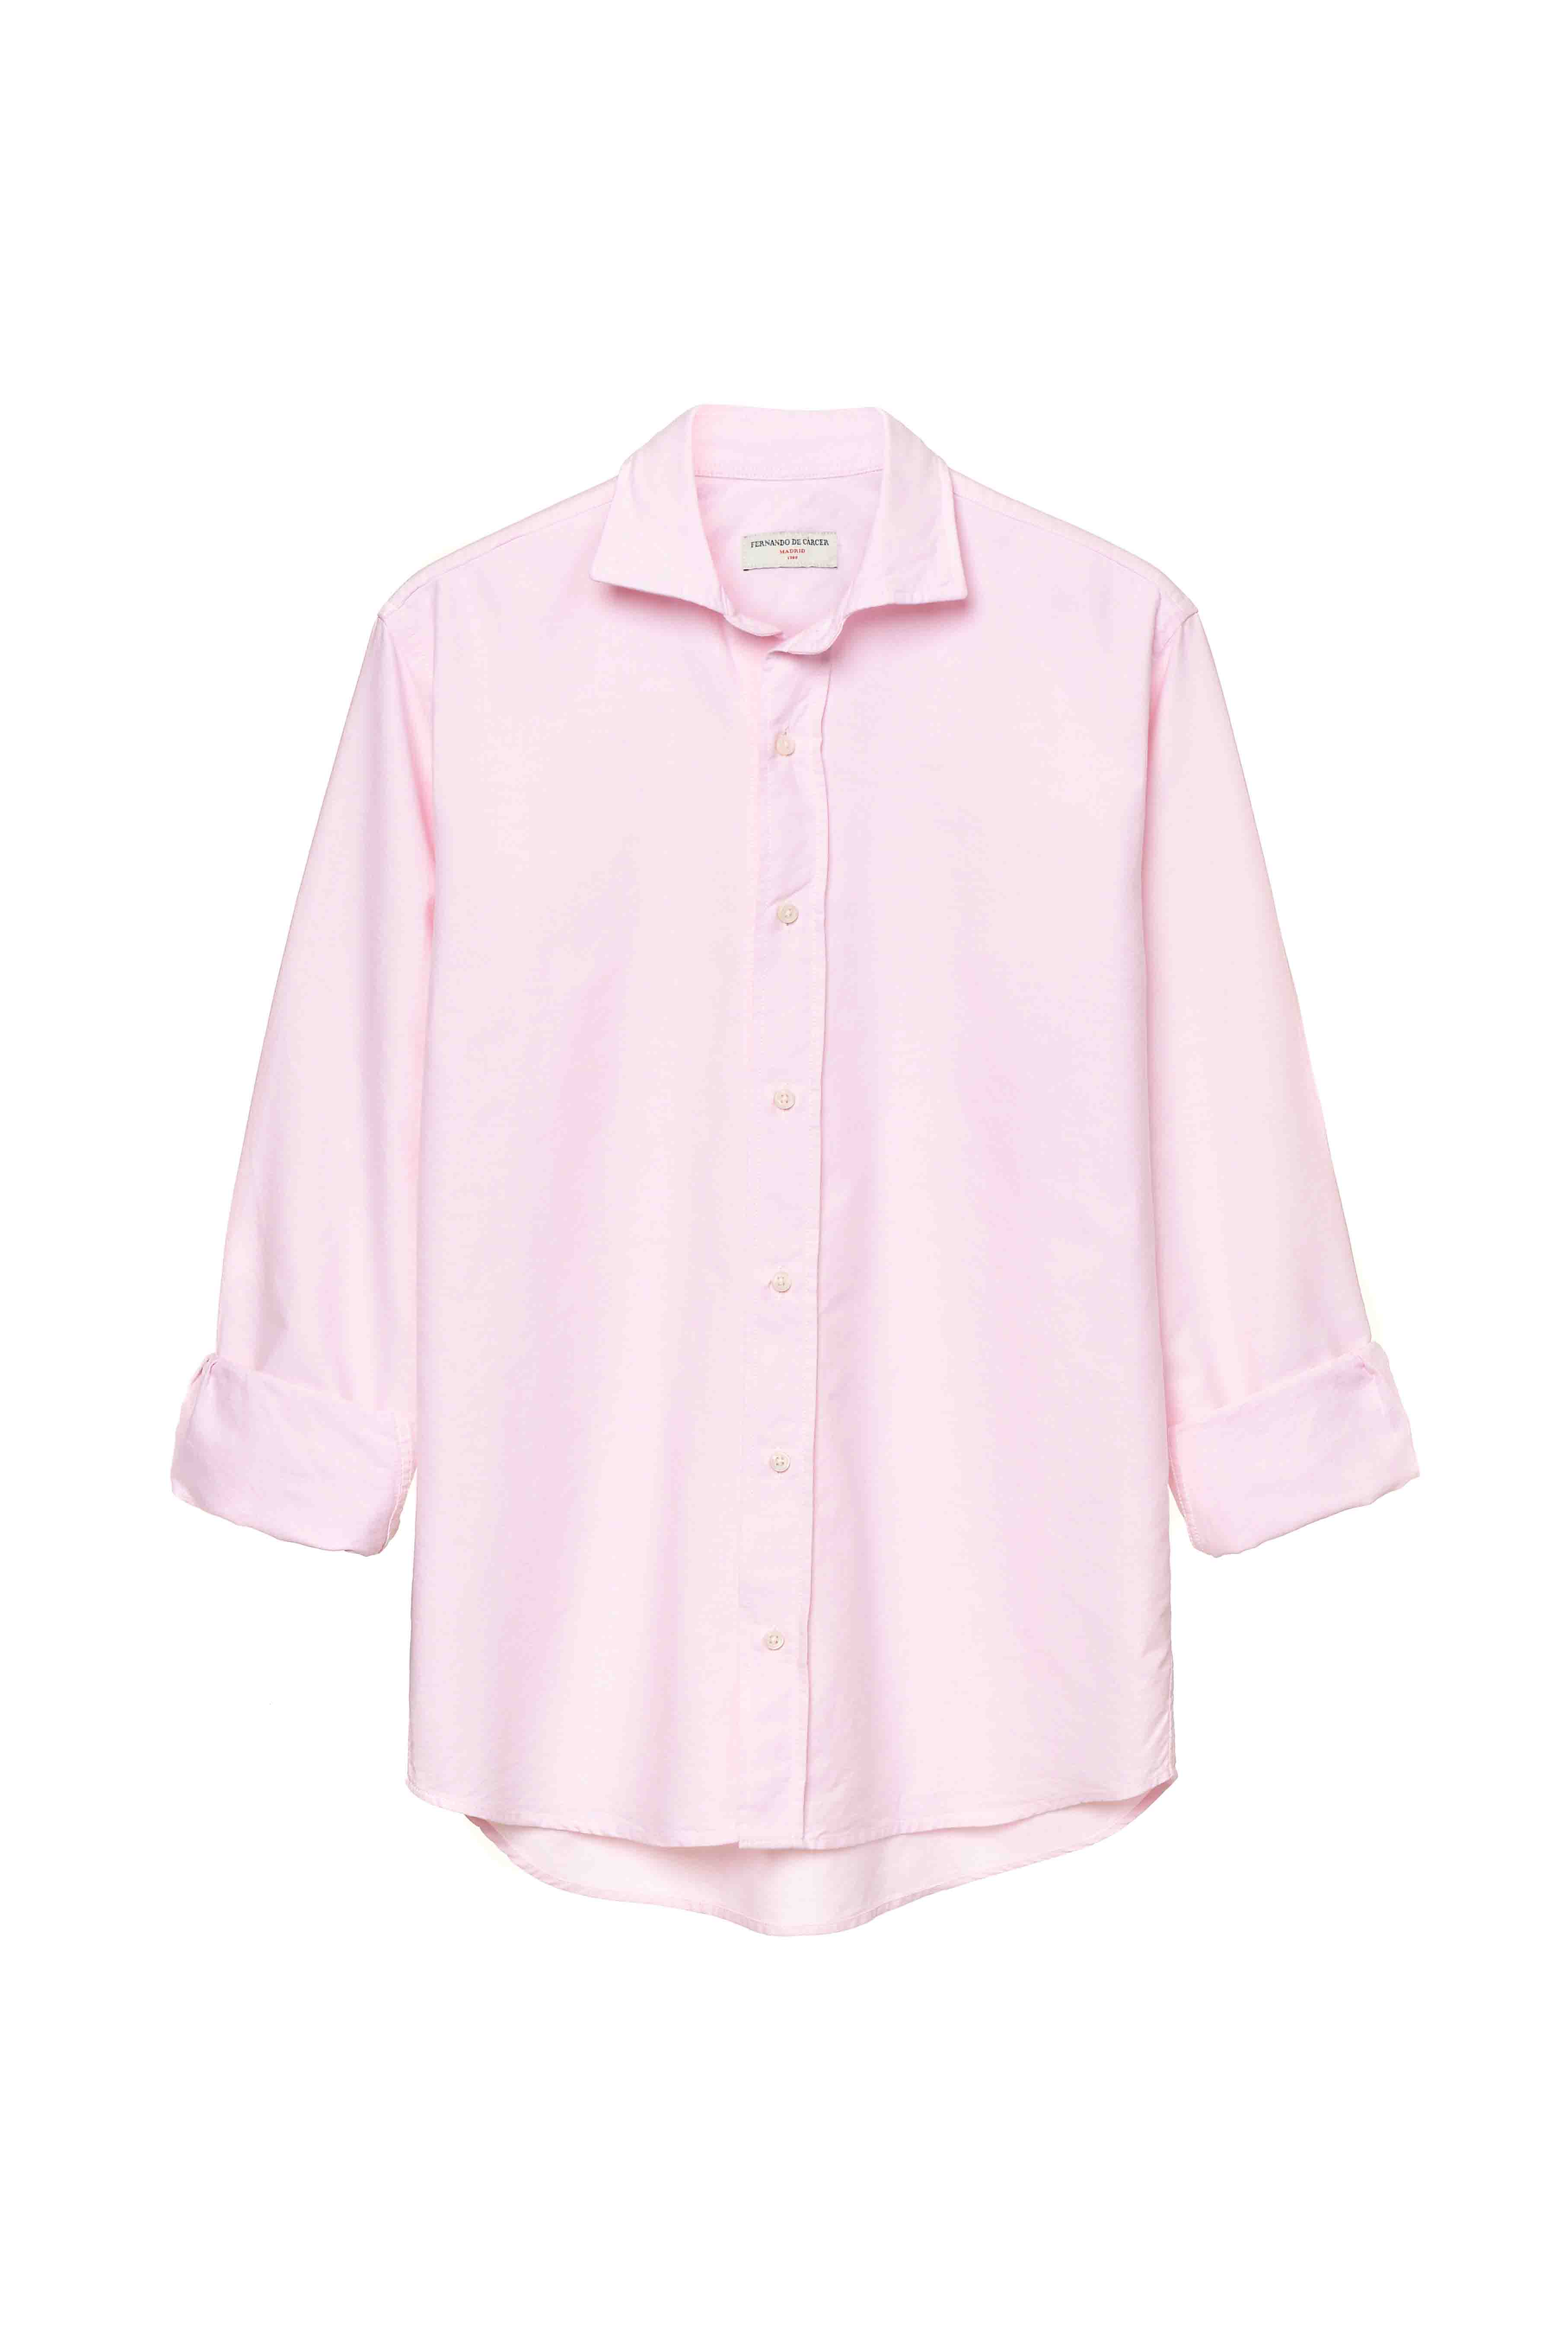 Camisa de Algodón - Oxford Rosa